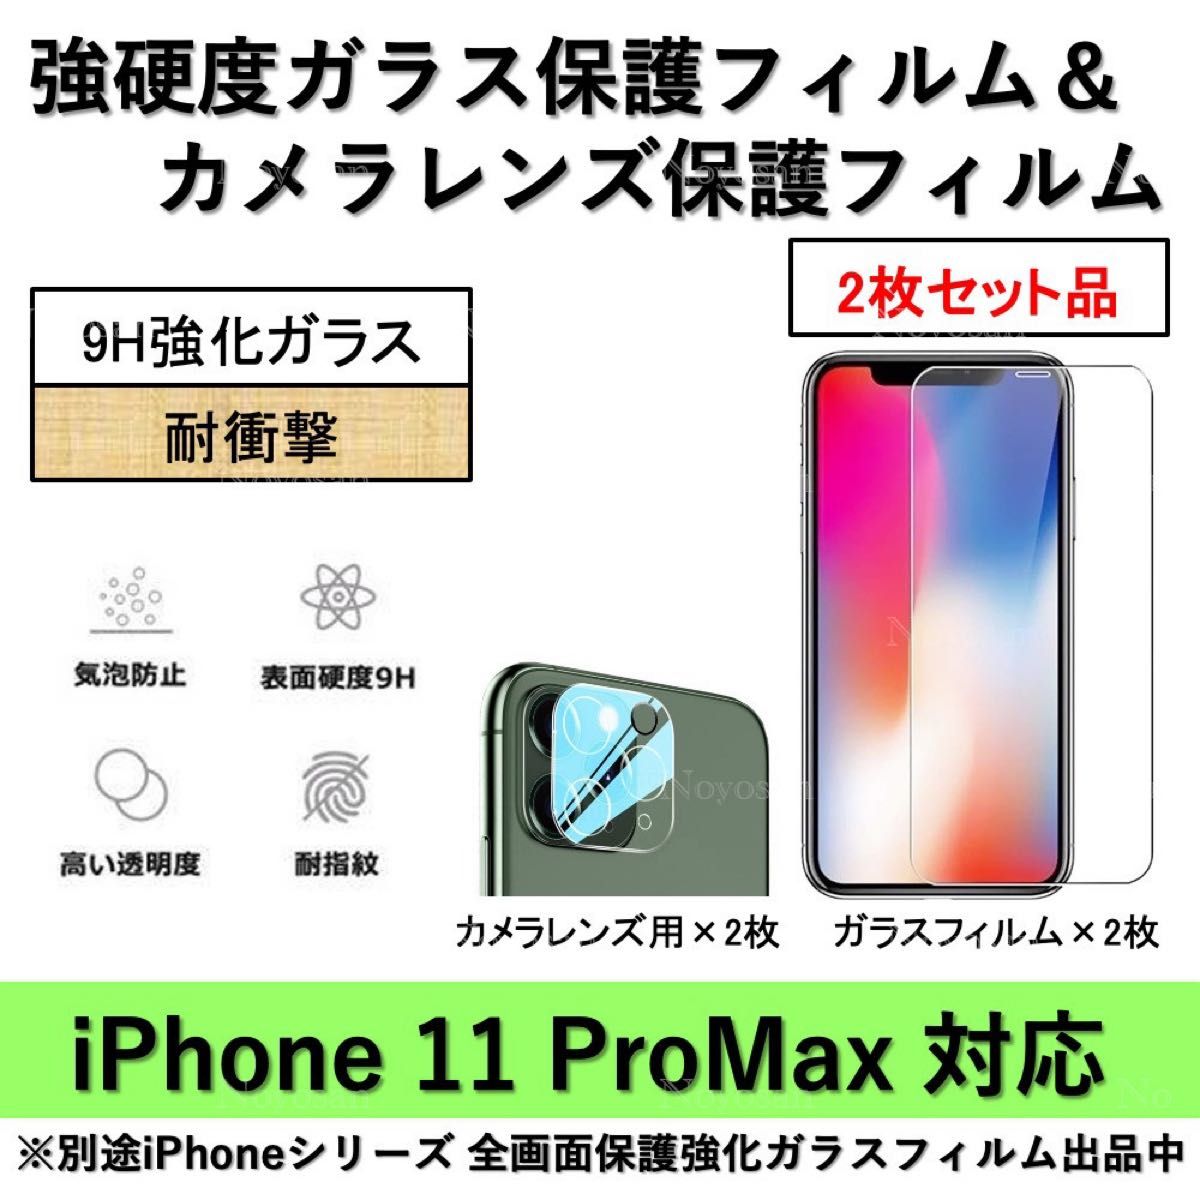 iPhone11ProMax対応 強硬度ガラスフィルム&背面カメラレンズ用ガラスフィルムセット2式